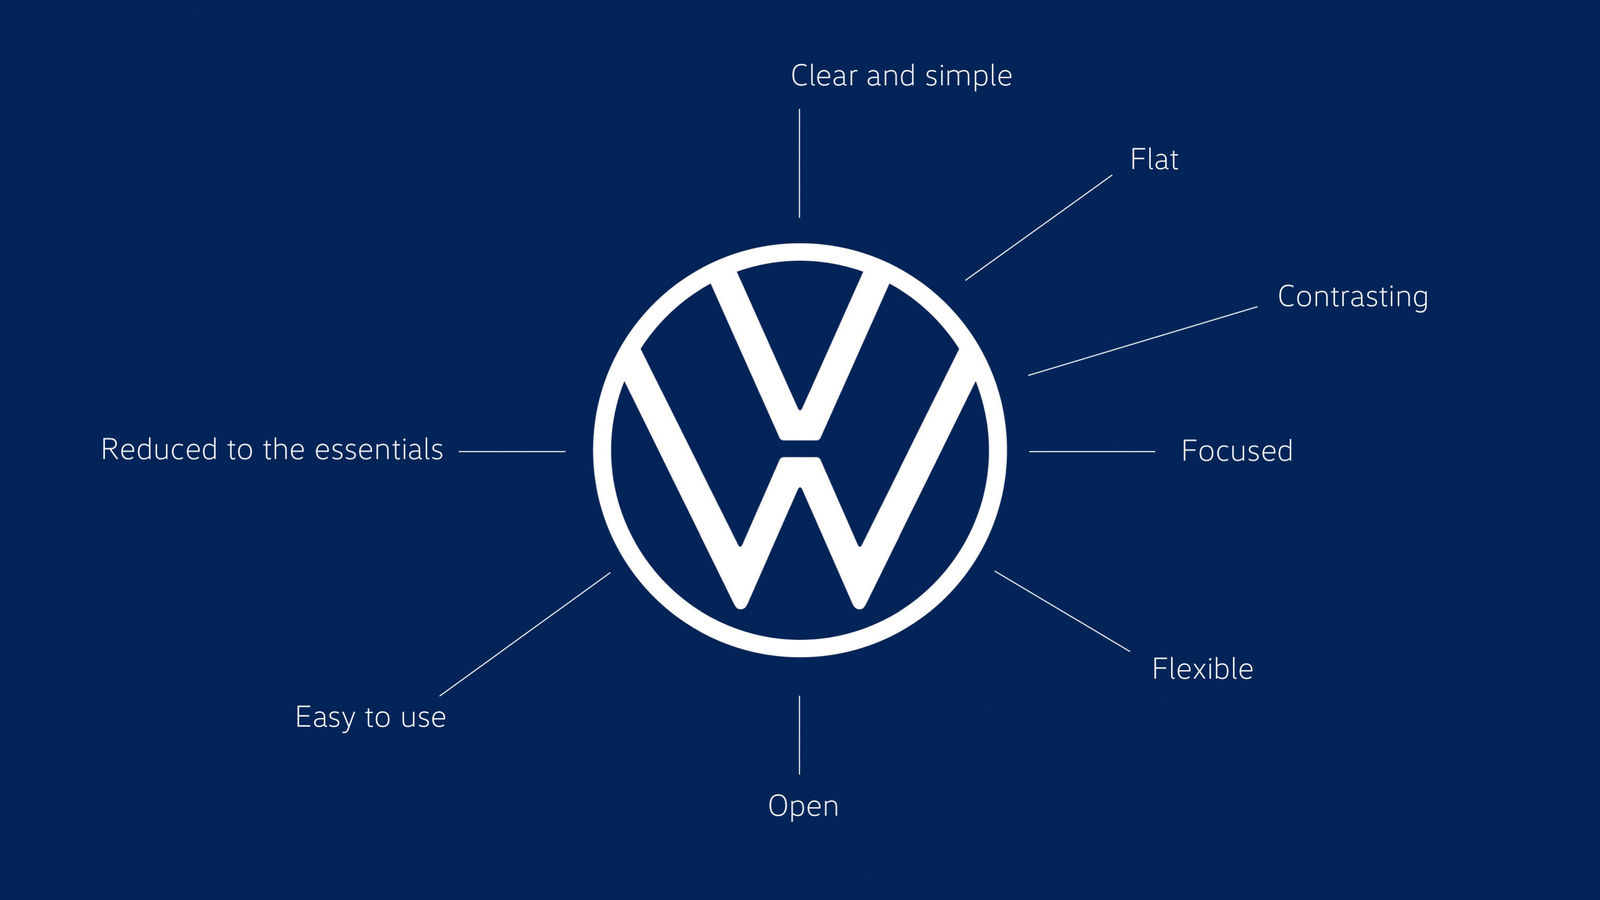 Volkswagen zeigt neuen Markenauftritt und Logo